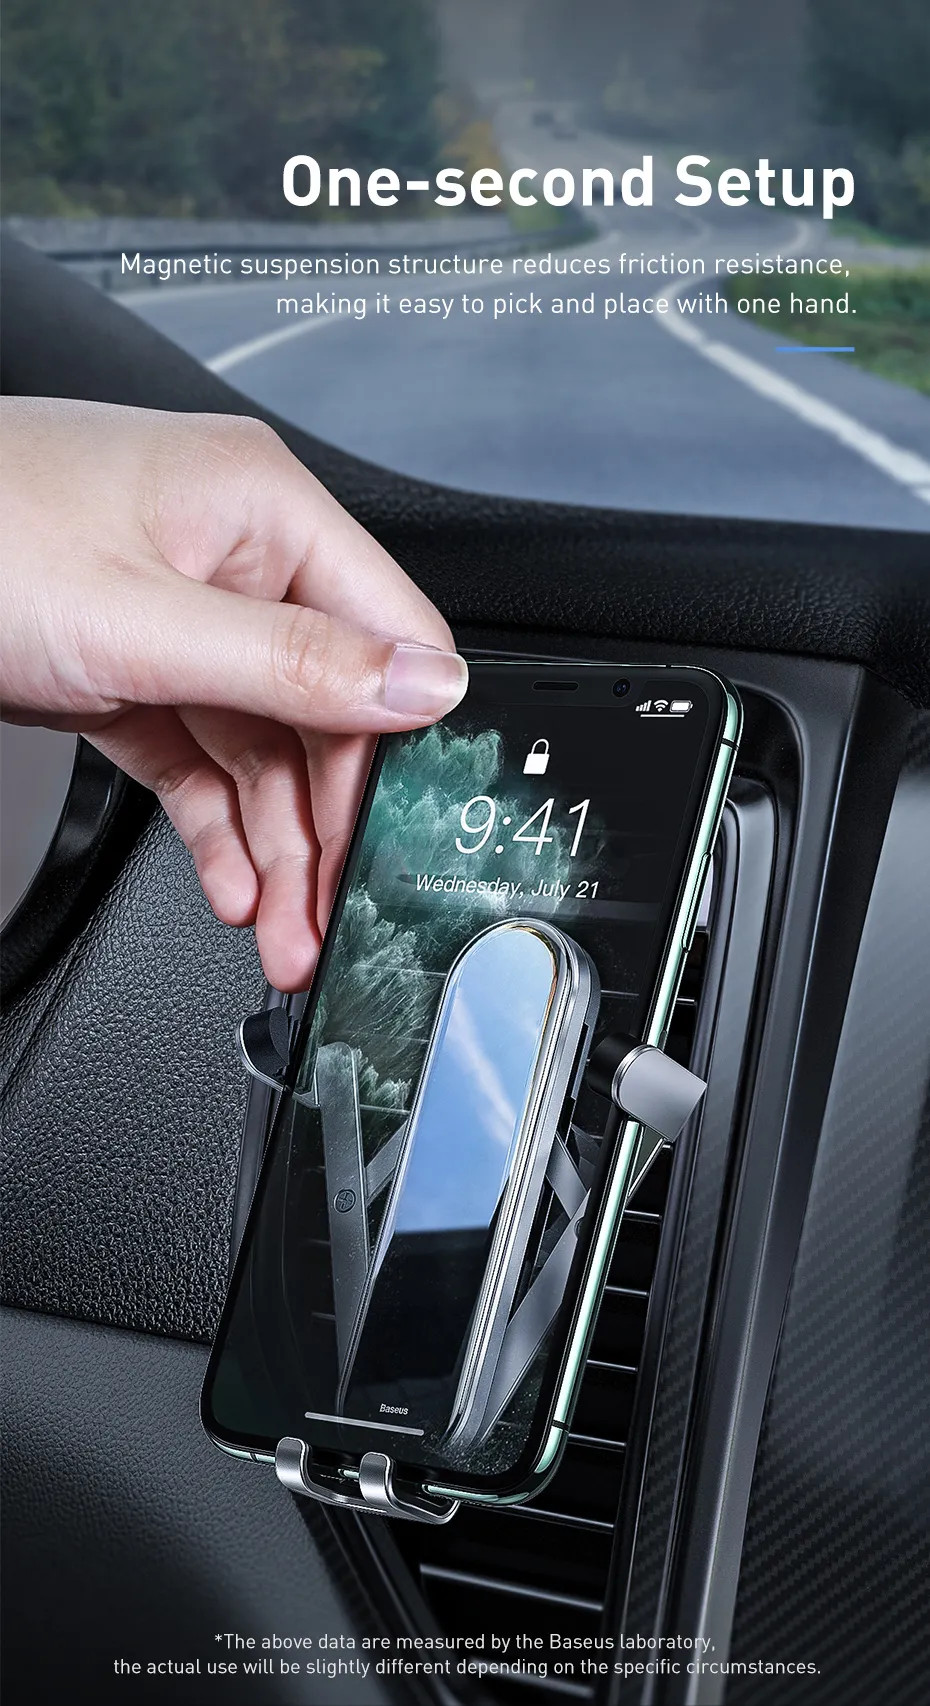 Giá đỡ điện thoại khóa mở tự động cho xe hơi ô tô hiệu Baseus Pen Gravity Car Mount